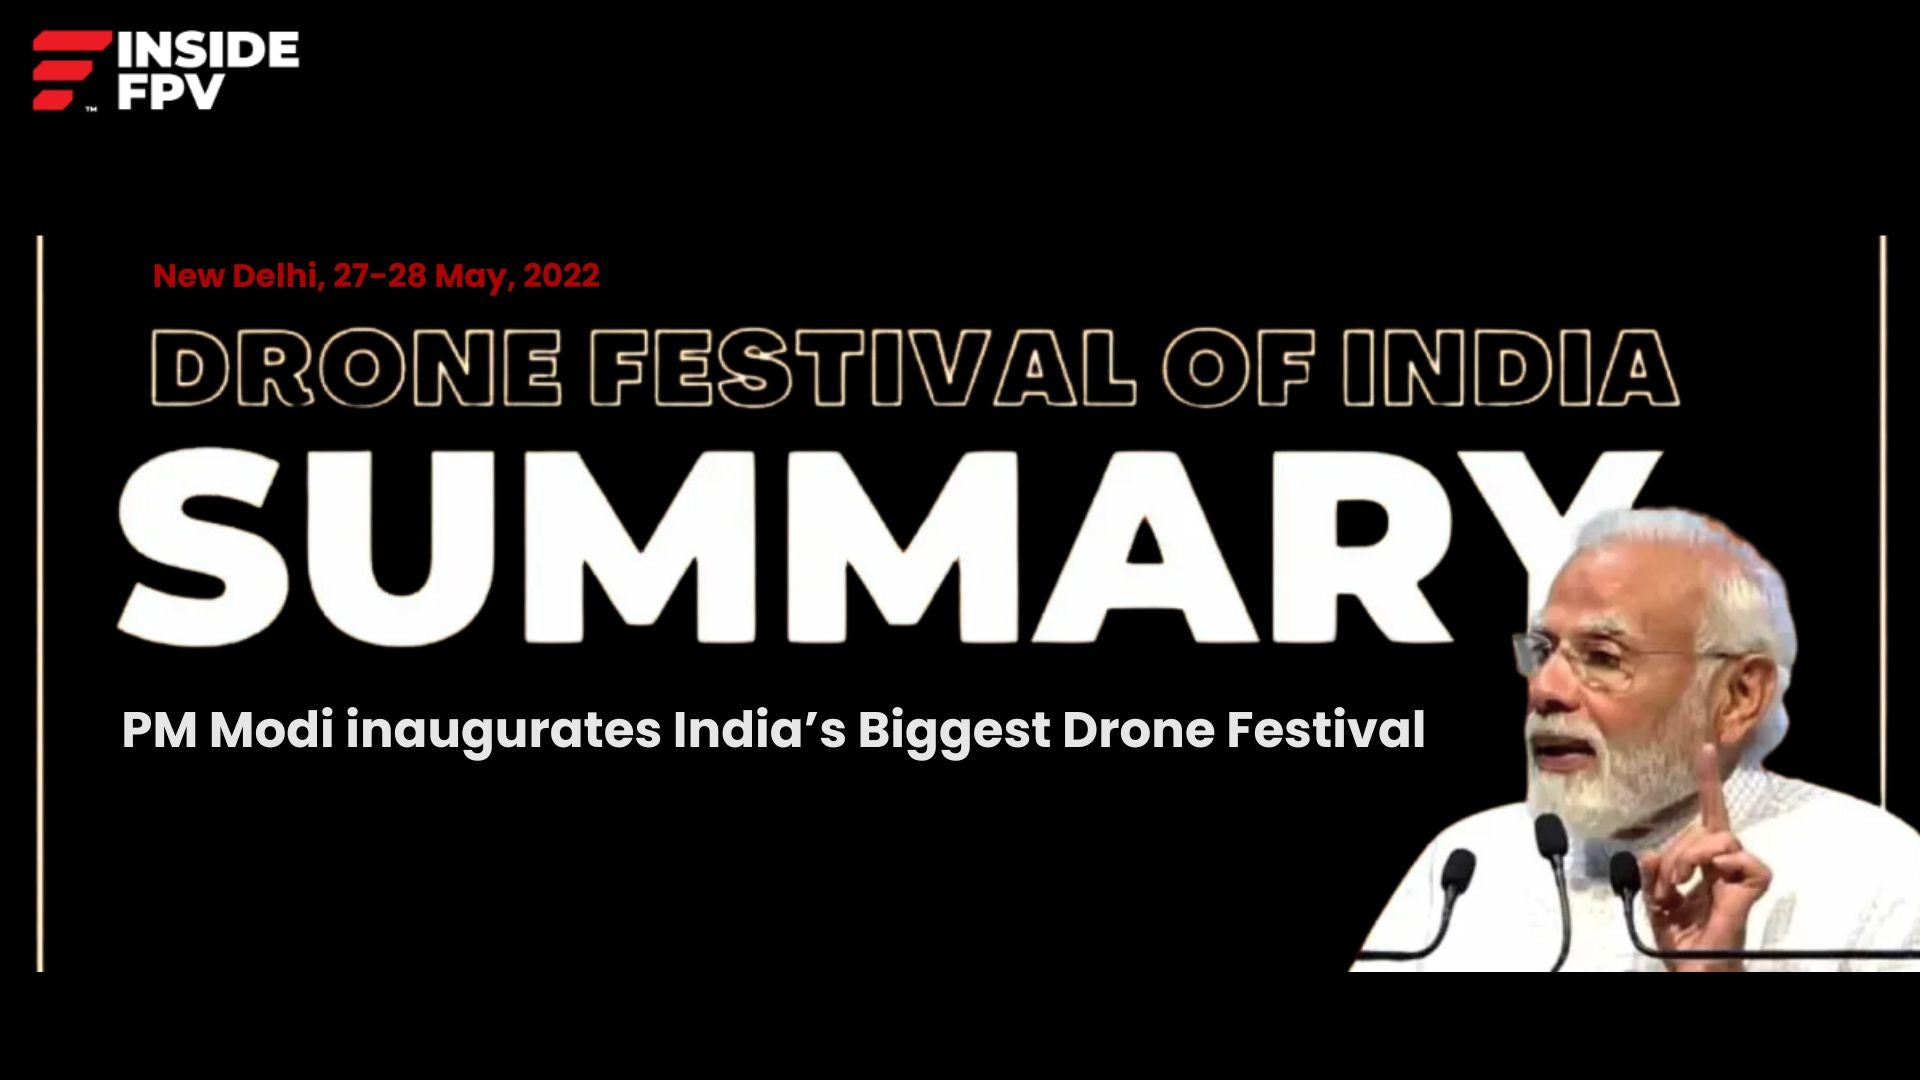 PM Modi inaugurates India’s Biggest Drone Festival